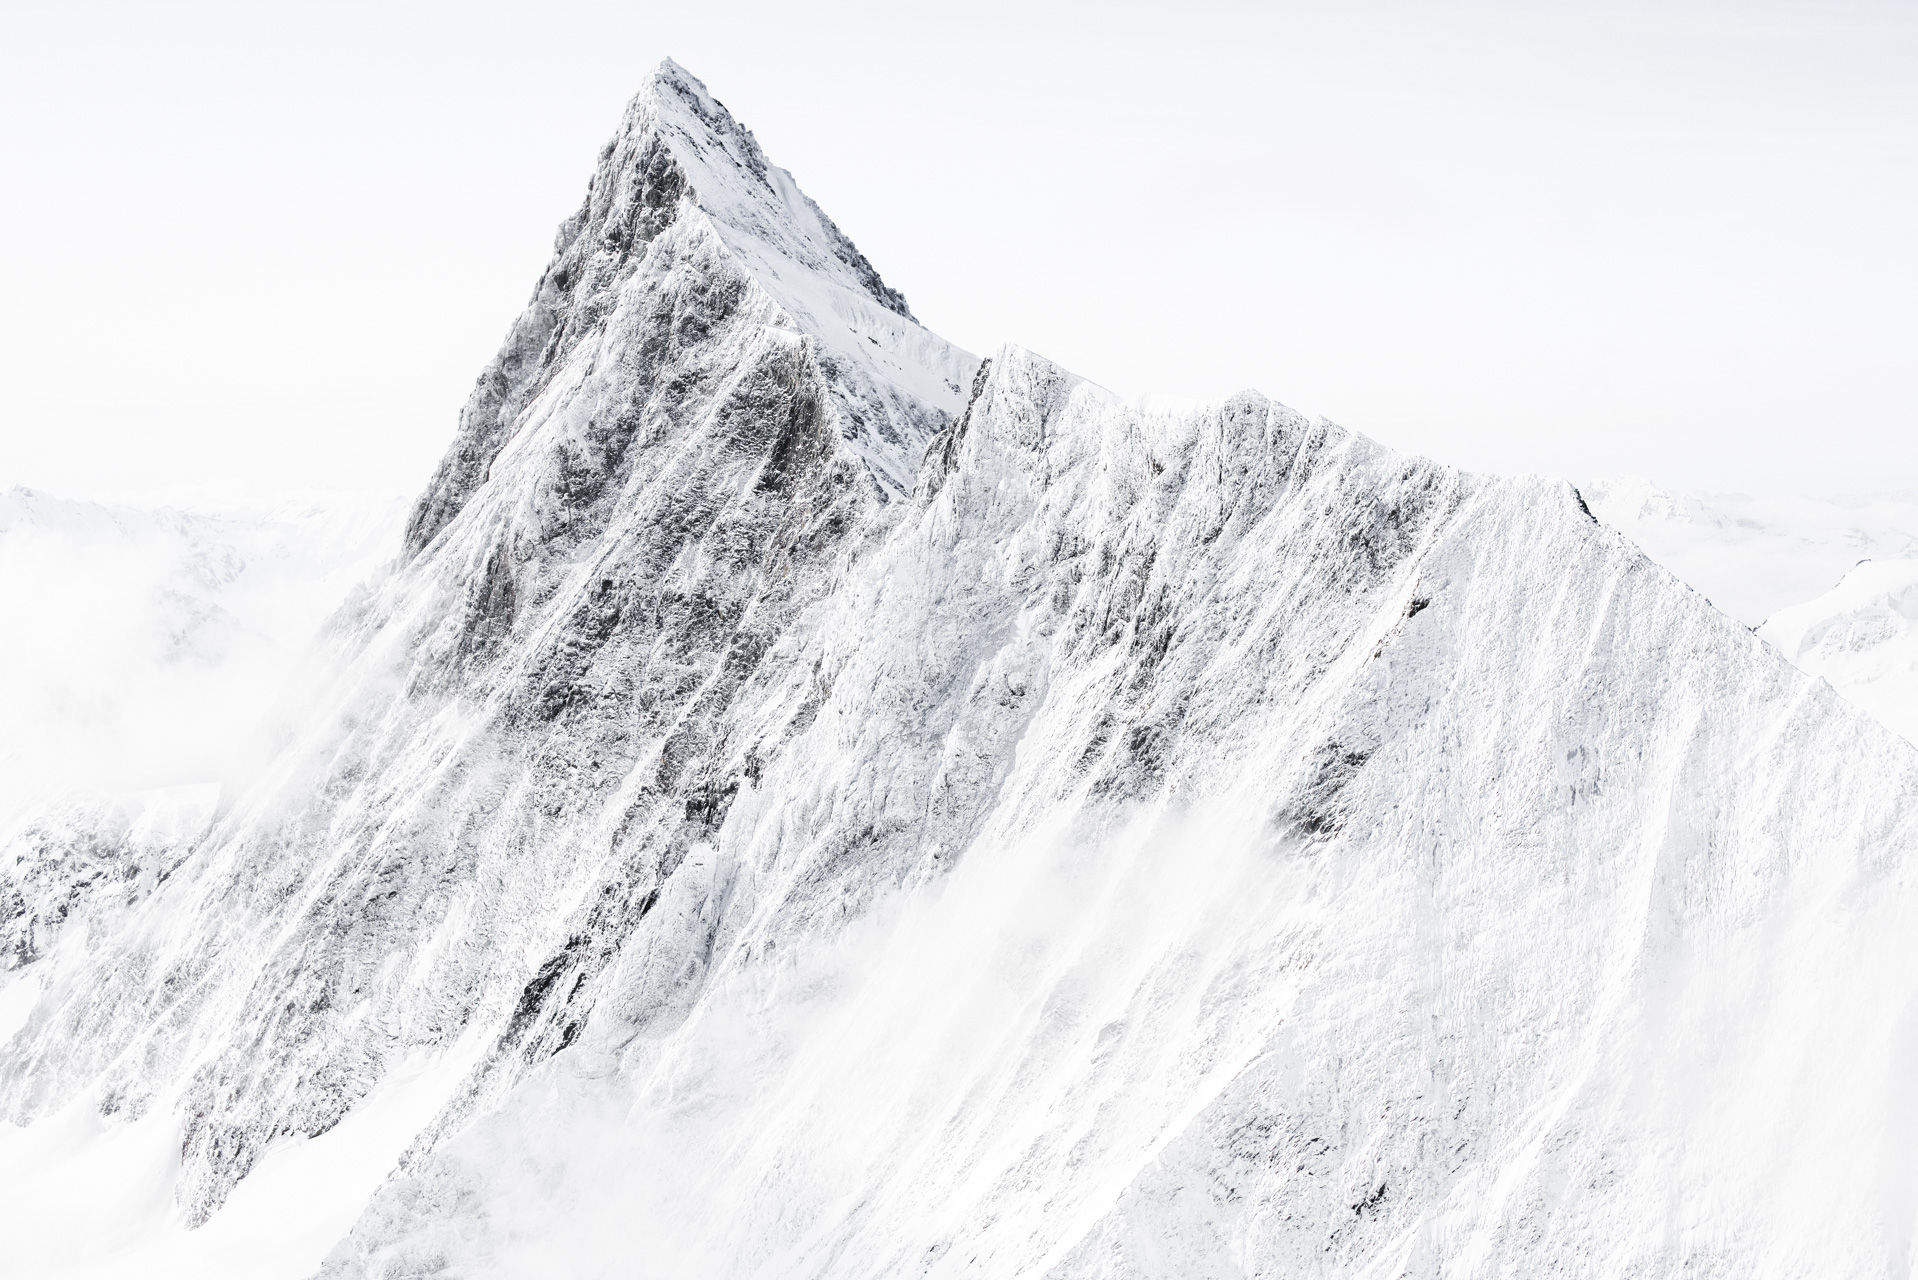 Sommet des Alpes Bernoises et de la roche en montagne sous la neige - Finsteraarhorn